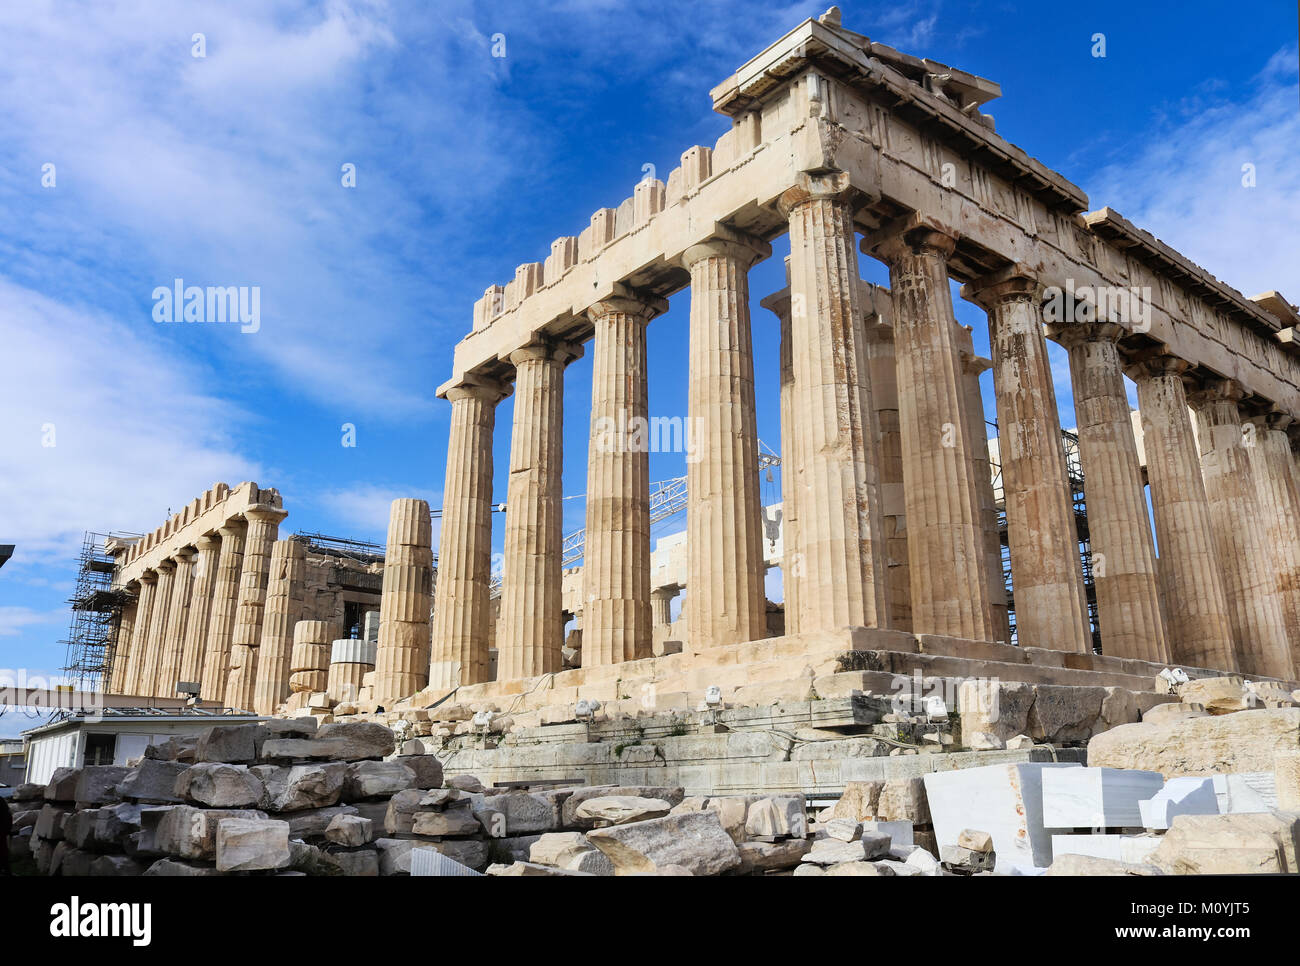 Nahaufnahme des Parthenon auf der Akropolis gewinkelt gegen sehr blauen Himmel zeigt laufenden Umbaumaßnahmen auf der anderen Seite - Athen Griechenland 1-3 2018 Stockfoto